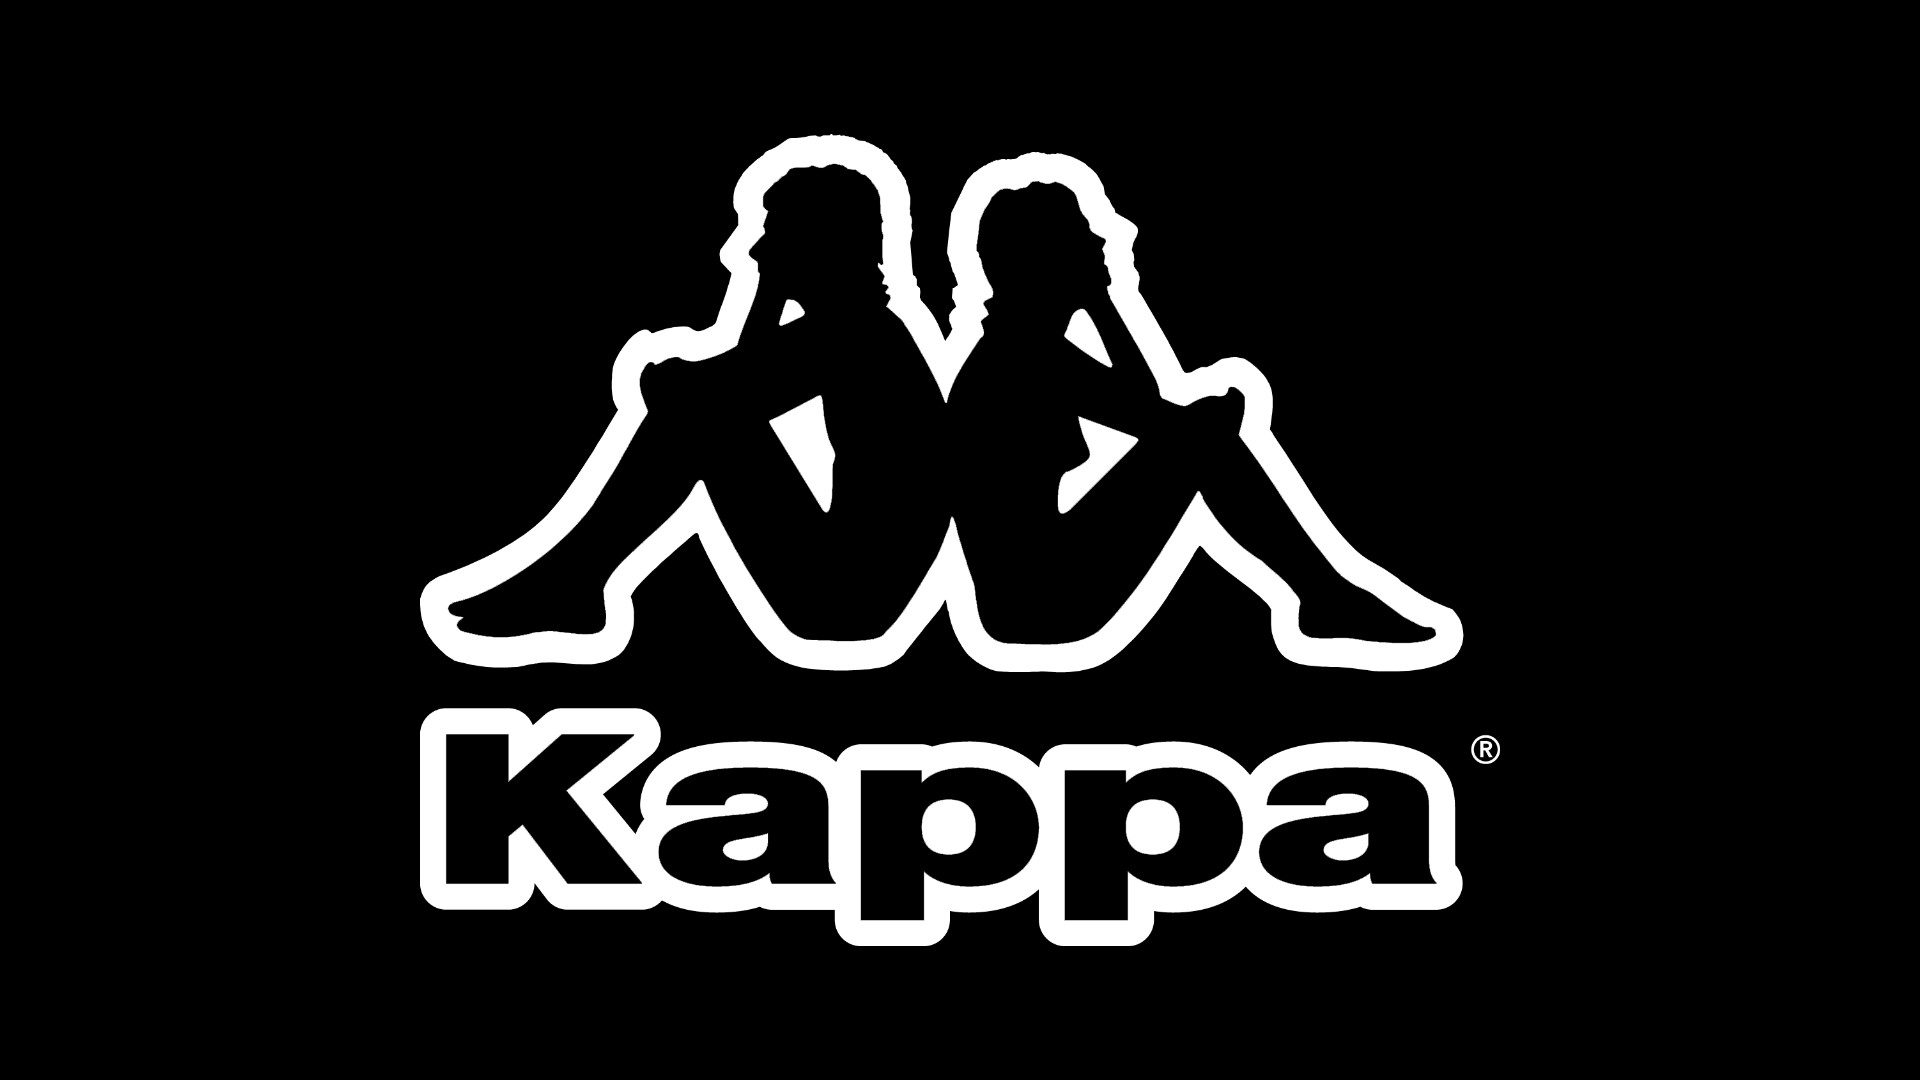 Карра каким. Фирма Каппа. Каппа эмблема. Карра логотип. Каппа одежда логотип.